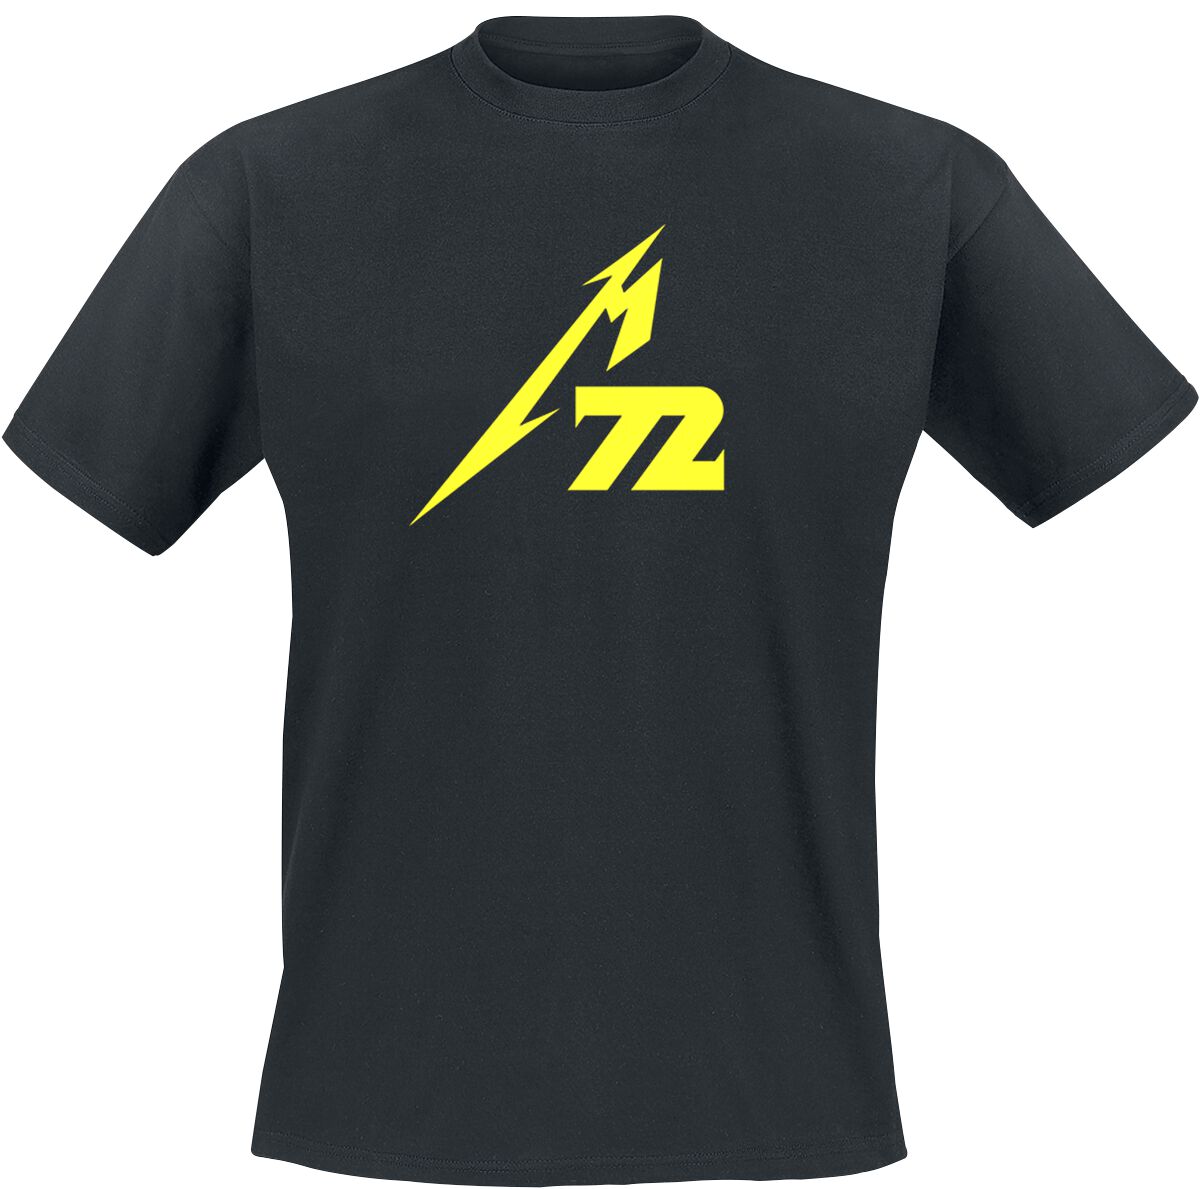 Metallica T-Shirt - Strobes (M72) - M bis 5XL - für Männer - Größe 5XL - schwarz  - Lizenziertes Merchandise!